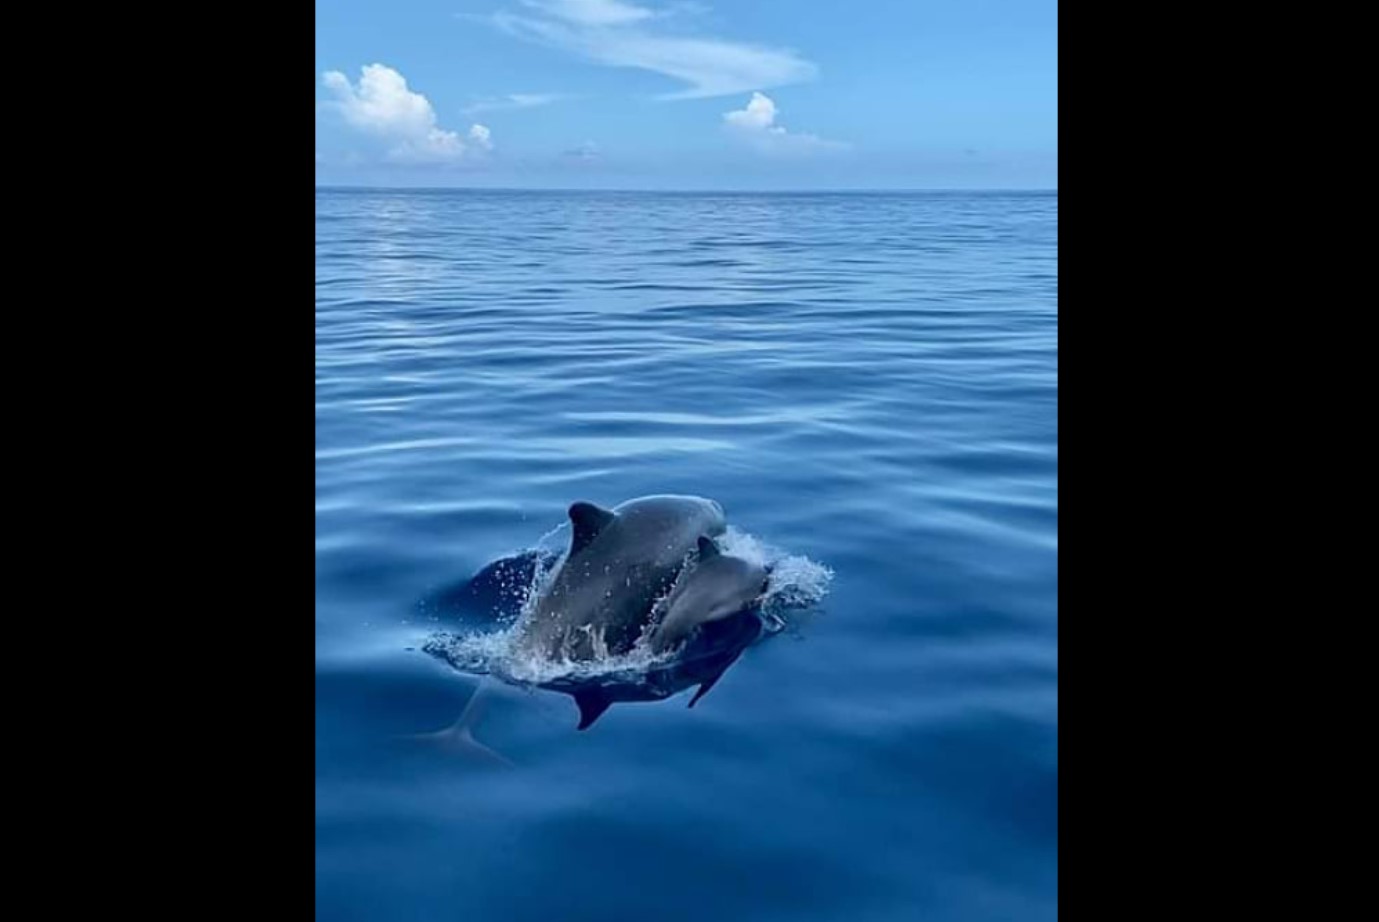     Un bébé dauphin et sa mère aperçus dans nos eaux 

